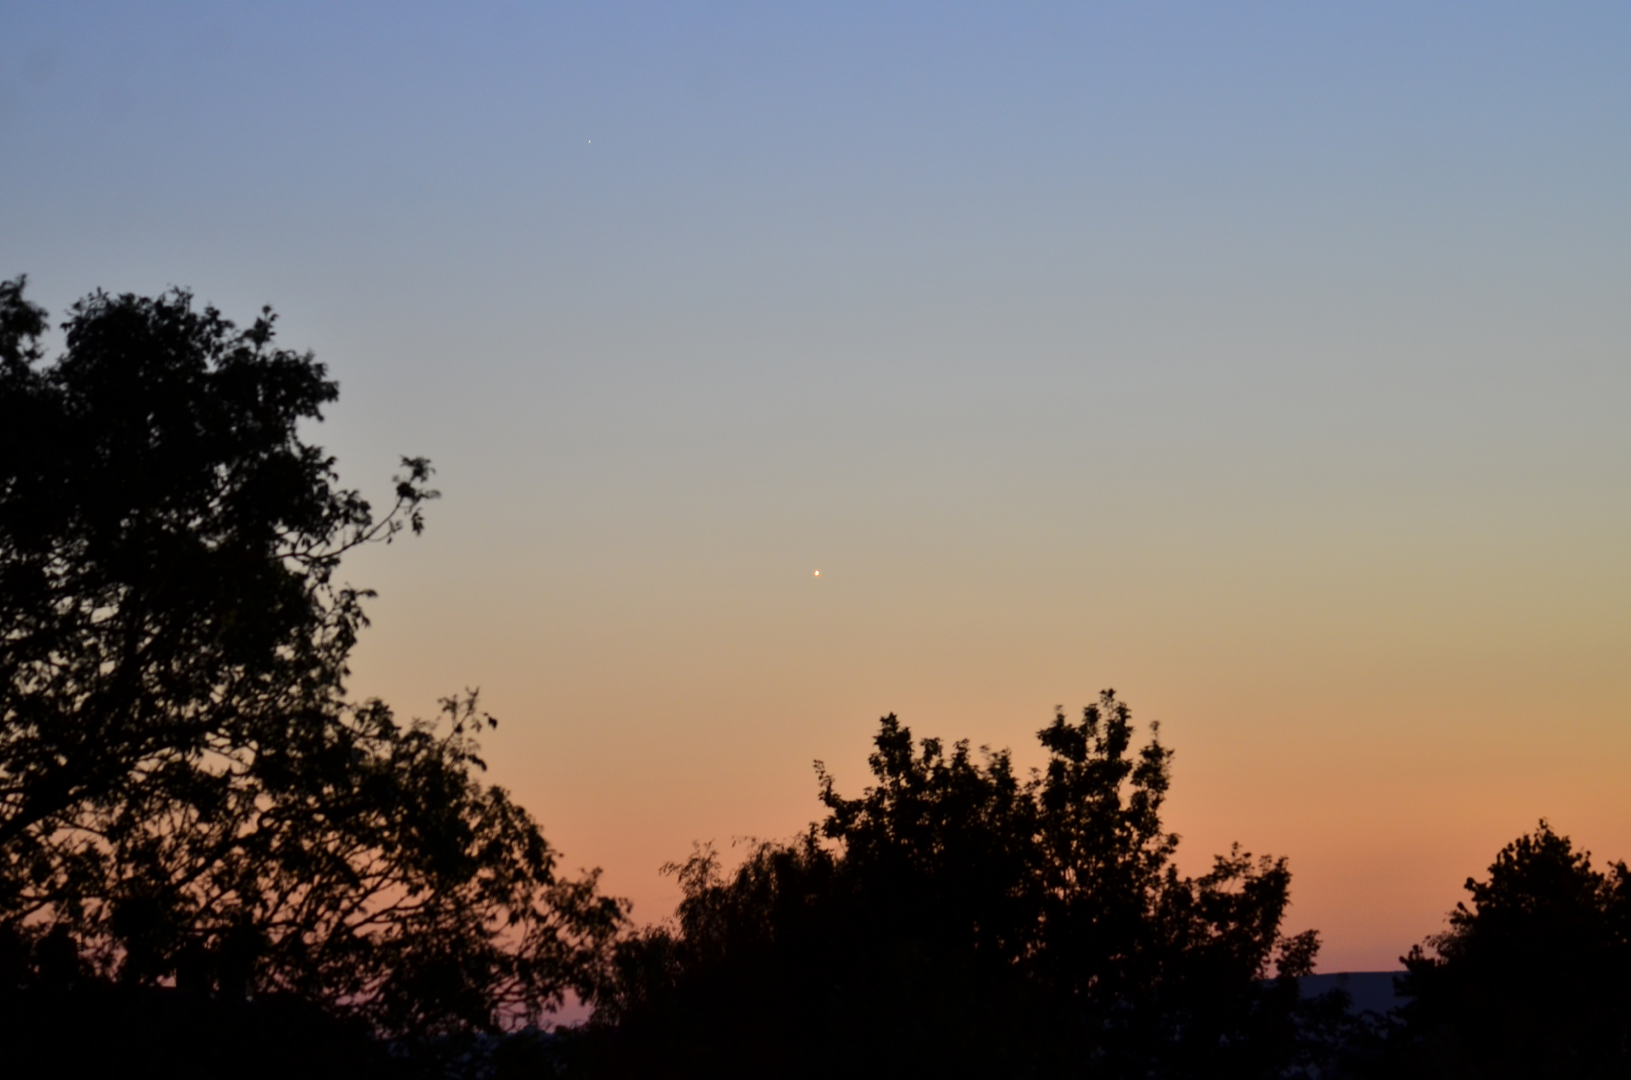 Venus at dusk